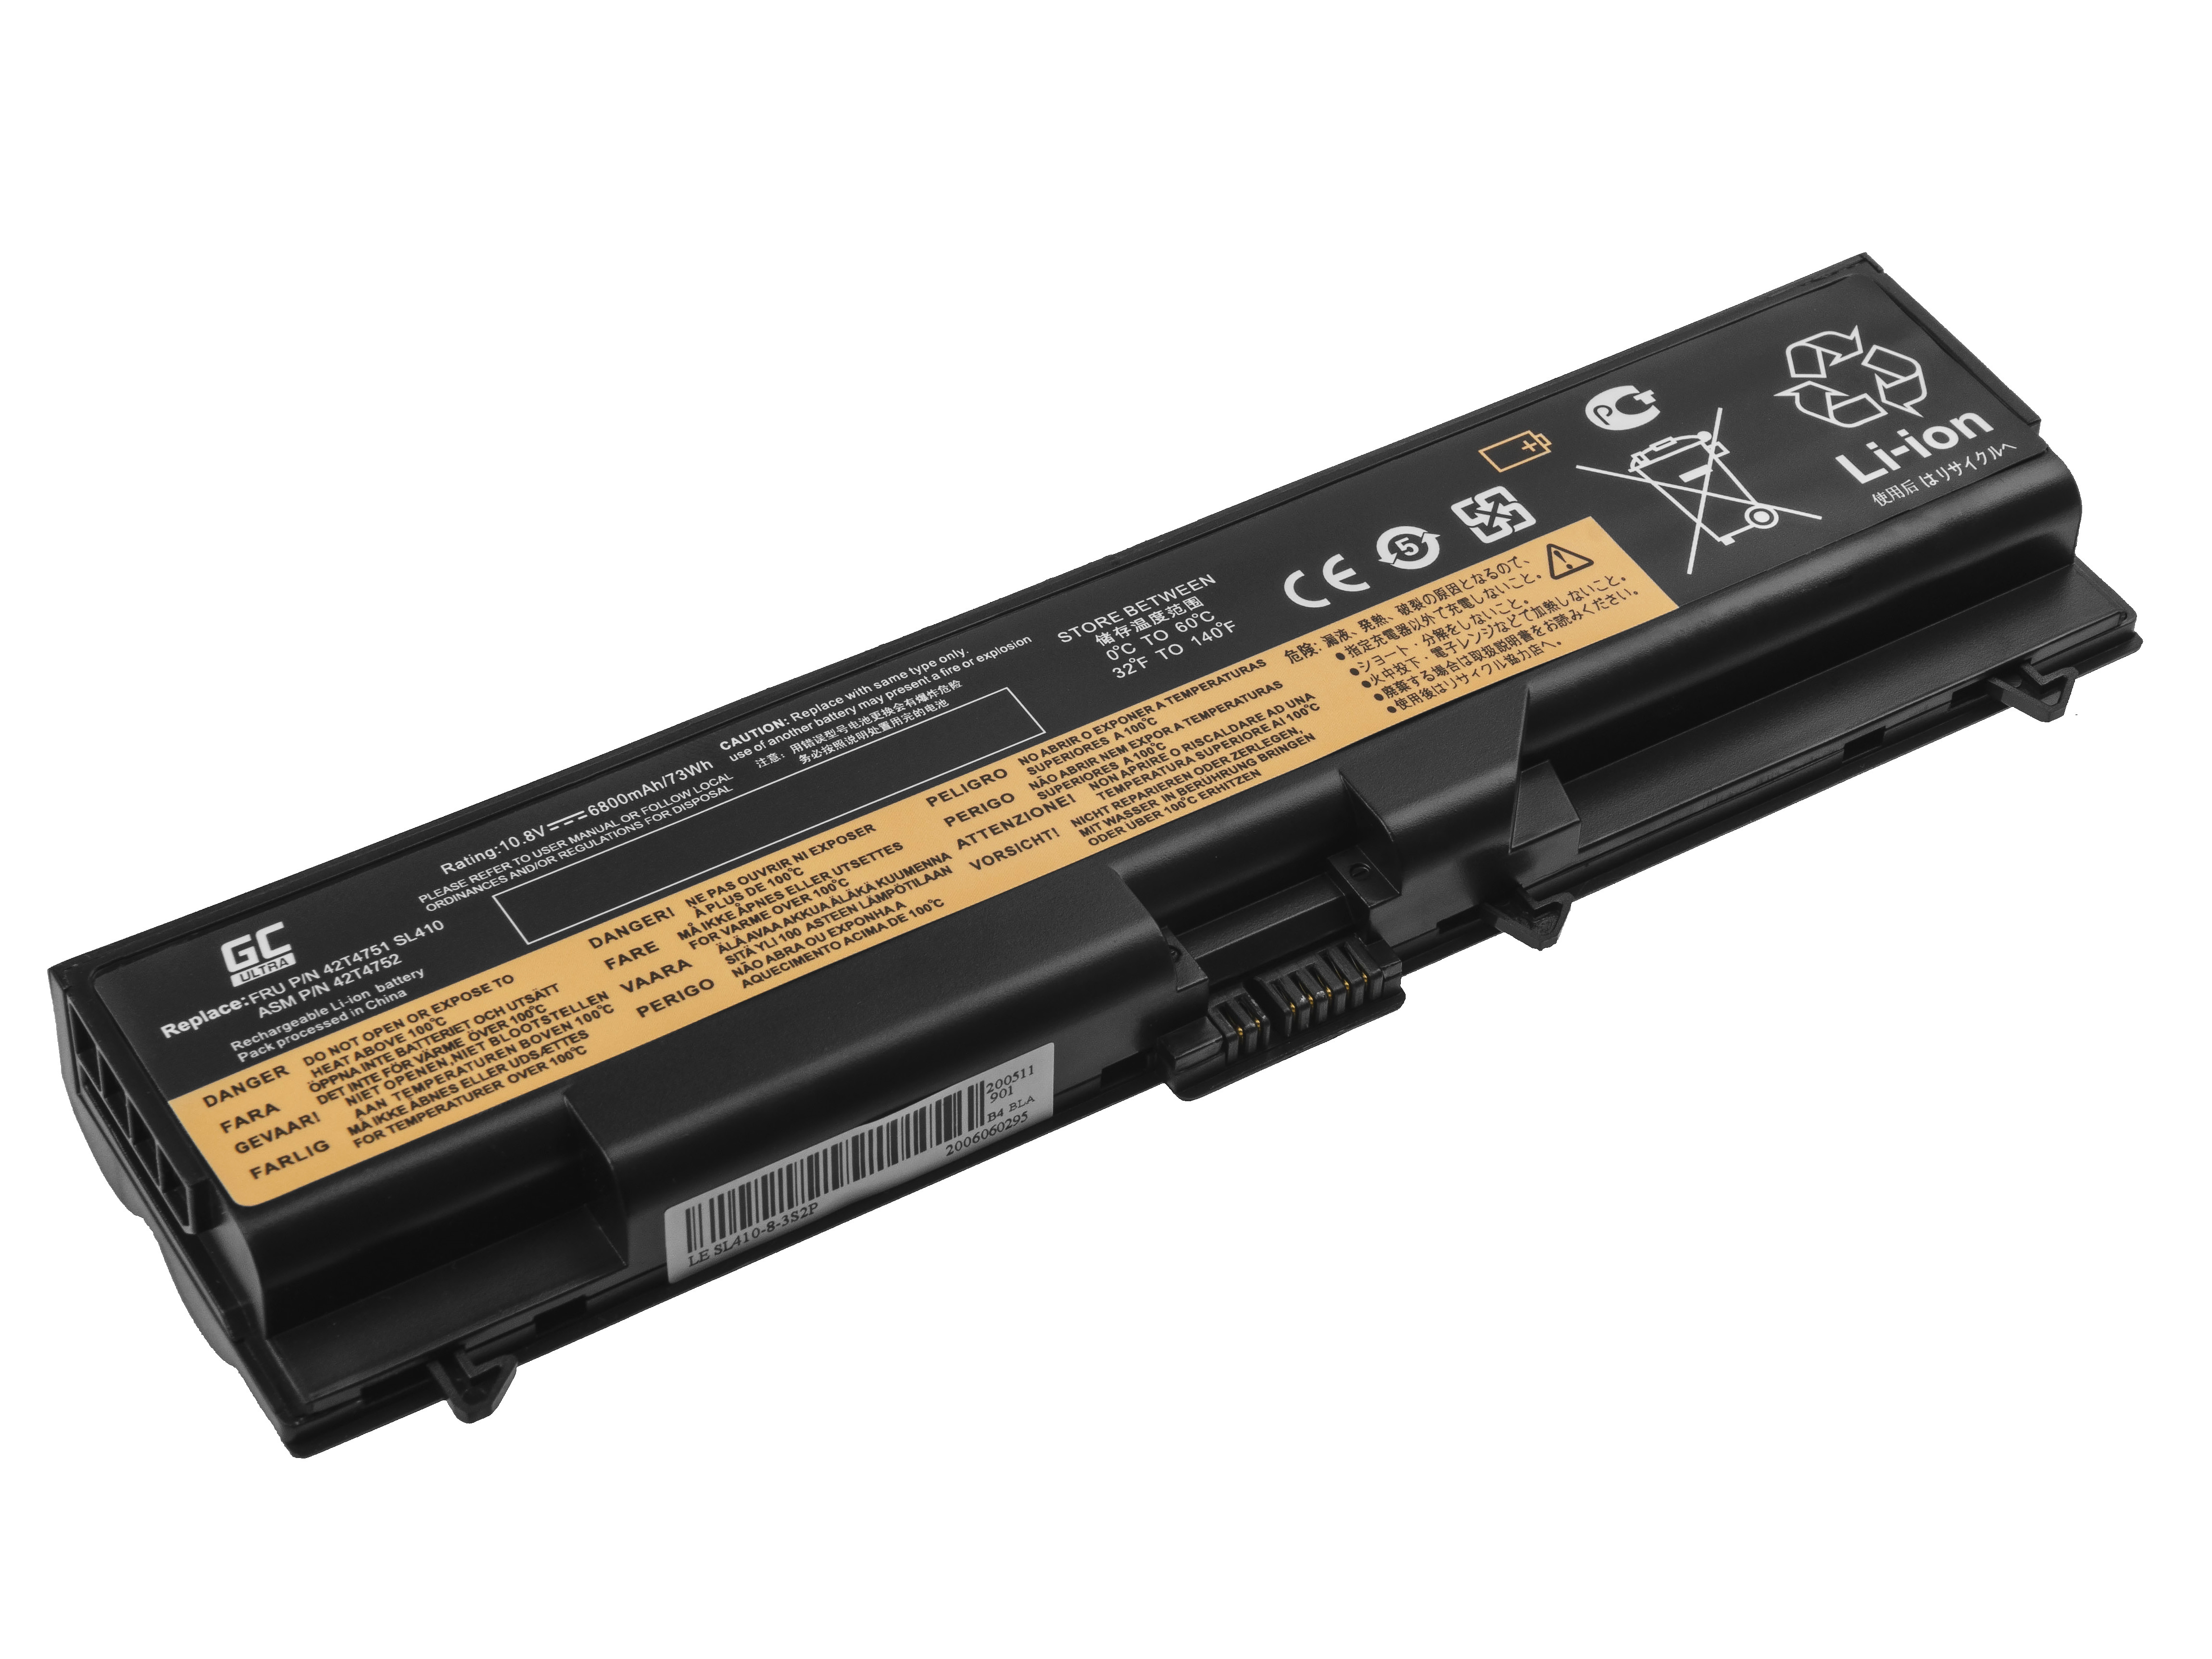 Green Cell Battery ULTRA 42T4795 for Lenovo ThinkPad T410 T420 T510 T520 W510 W520 SL410 SL510 L510 L520